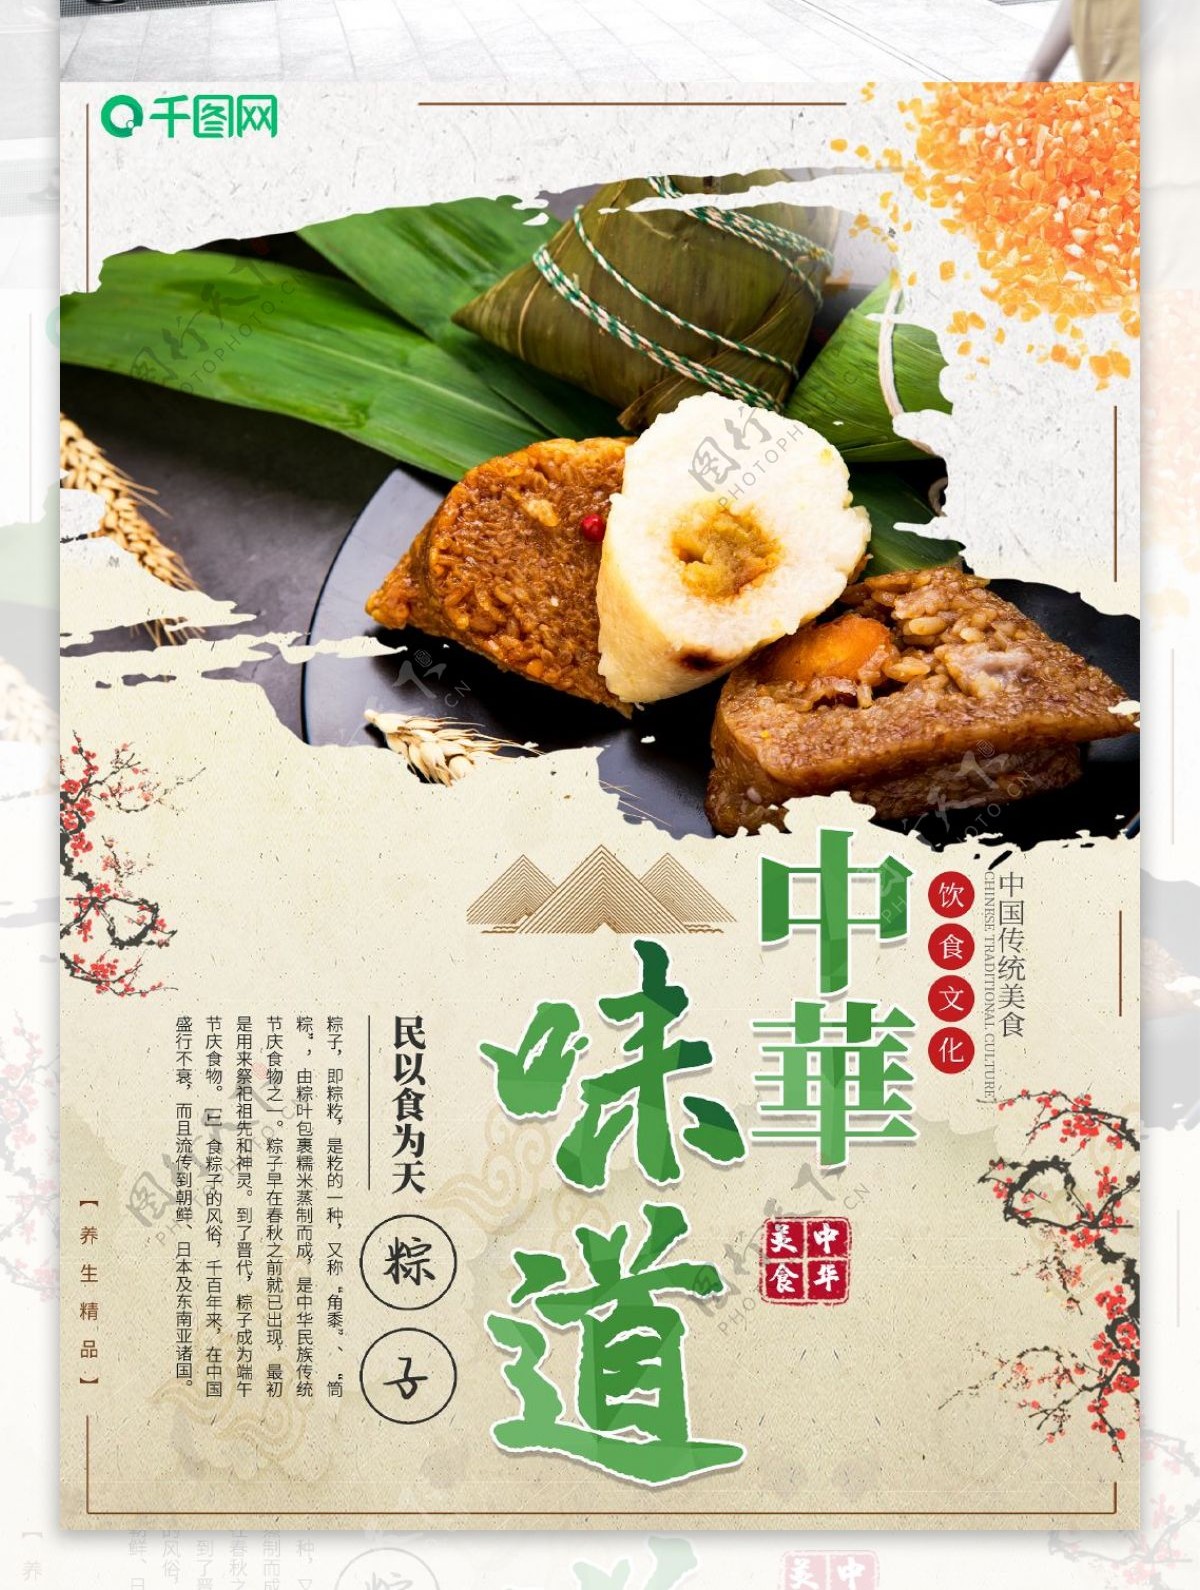 中华美食粽子宣传海报